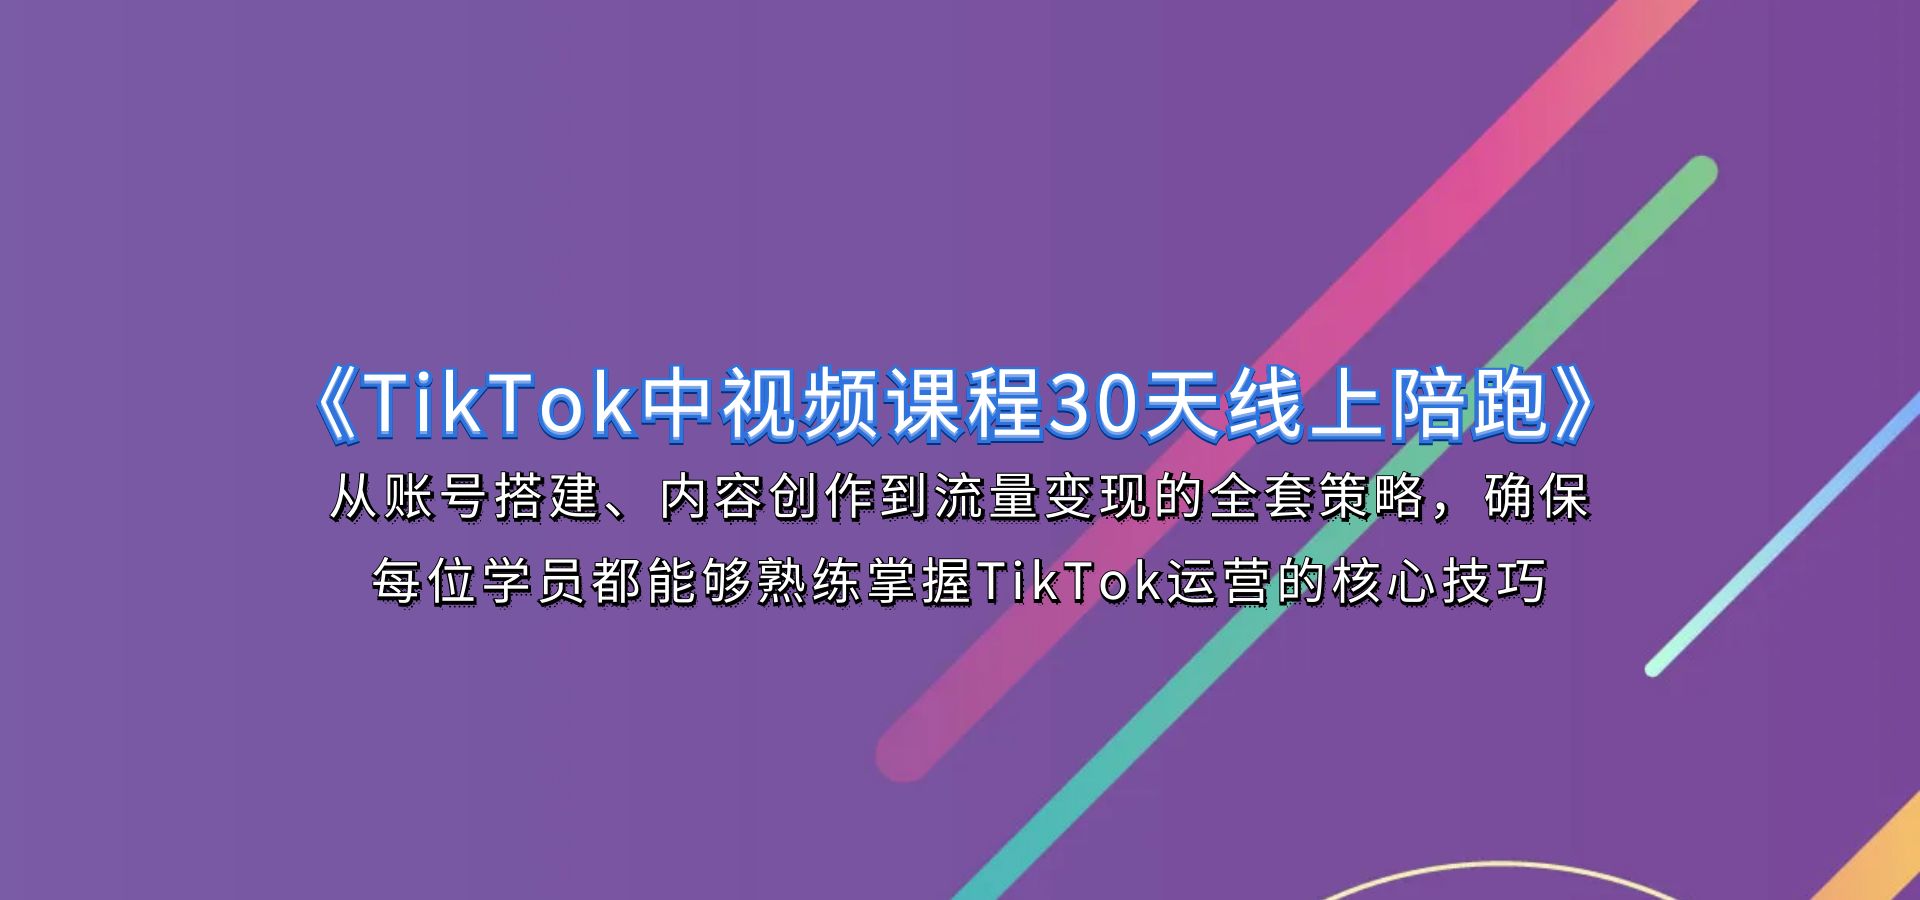 小泽《TikTok中视频课程30天线上陪跑》